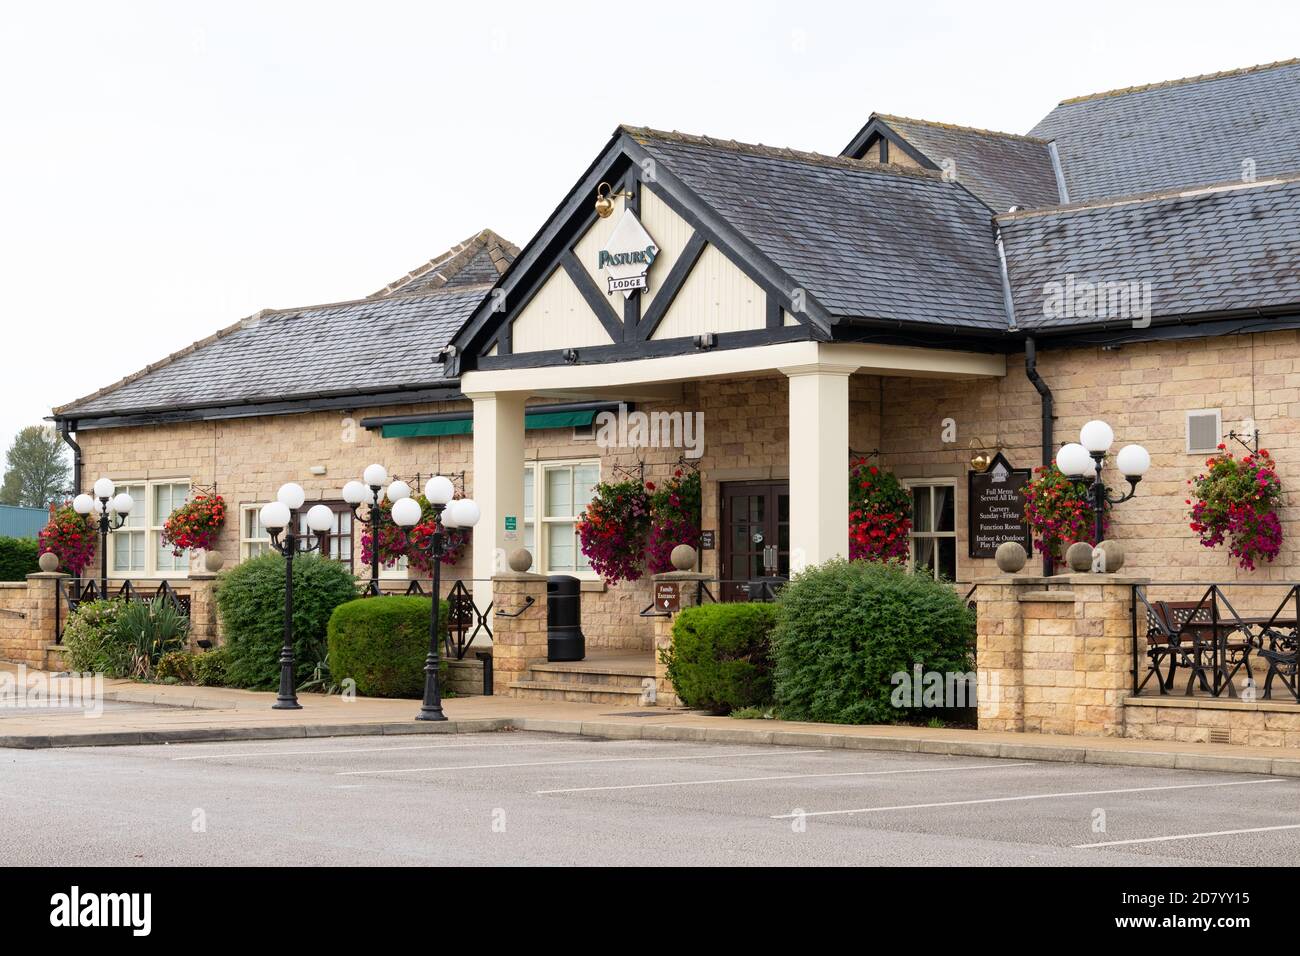 Pastures Lodge, restaurant de style pub familial, Mexborough, Doncaster, South Yorkshire, Angleterre, Royaume-Uni Banque D'Images